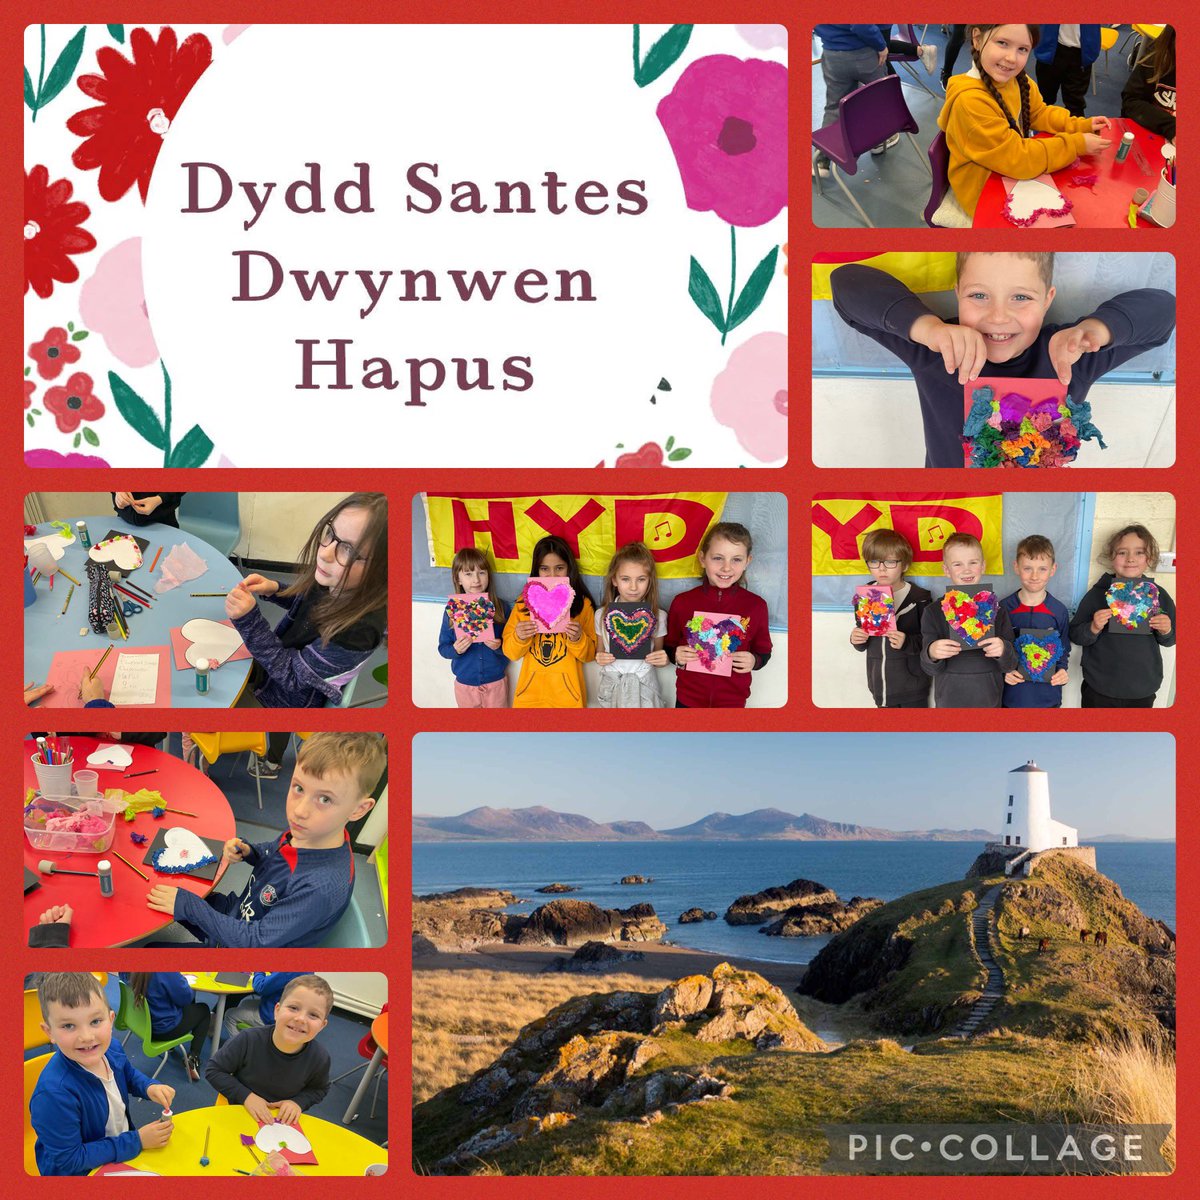 Mae Dosbarth Helyg wedi mwynhau dysgu am Santes Dwynwen heddiw!
Dosbarth Helyg have enjoyed learning about Santes Dwynwen today!
#DyddSantesDwynwen @Cymraegforkids @CymraegCampus